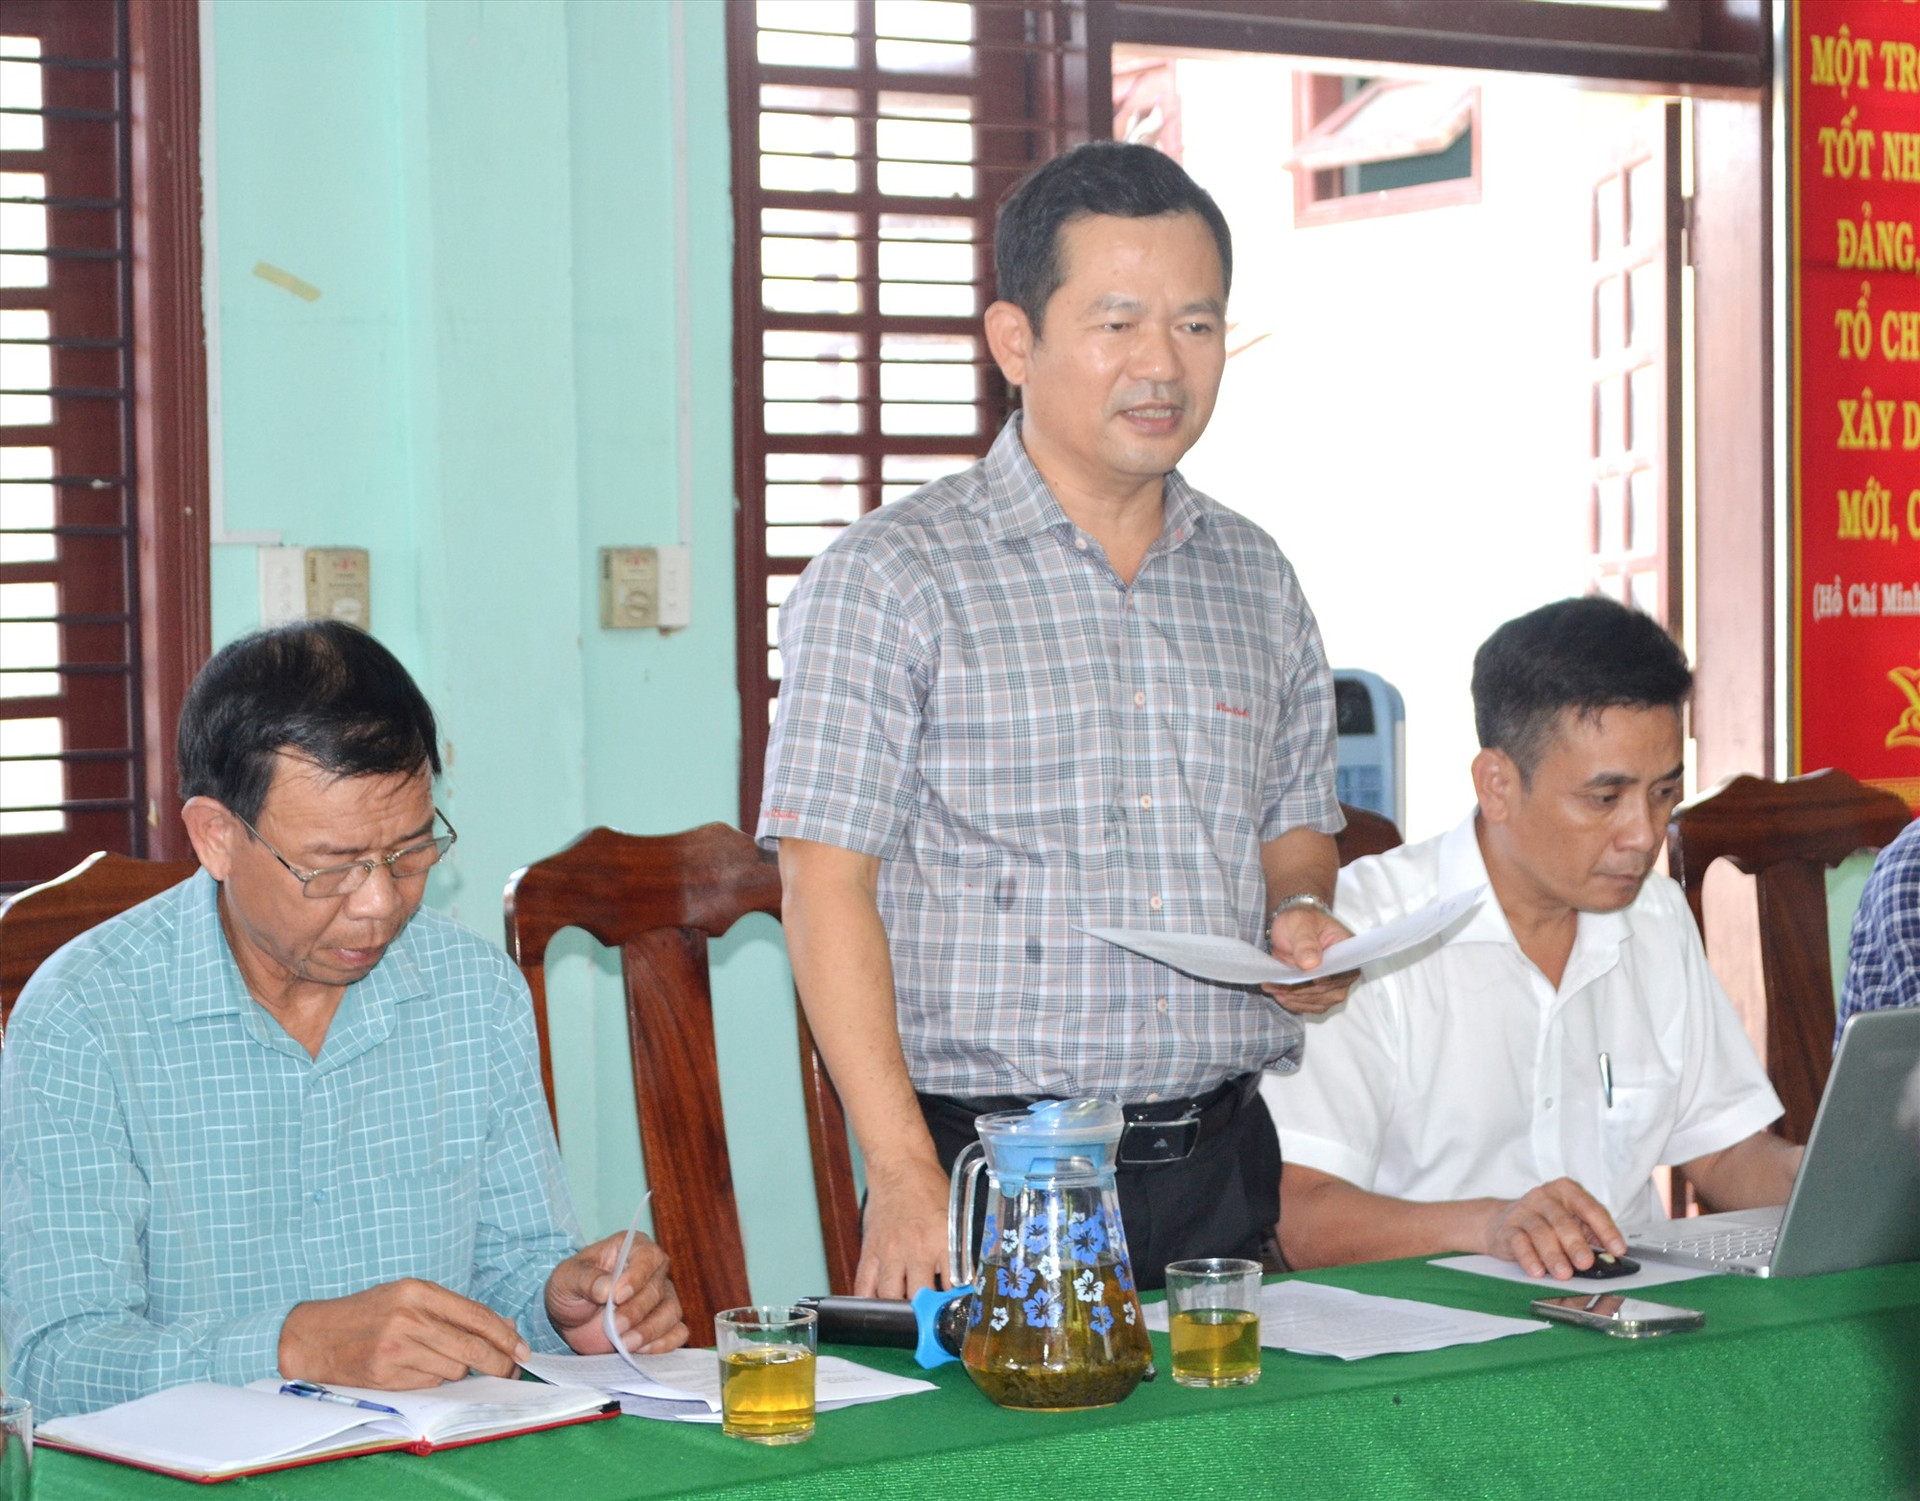 Chủ tịch UBND huyện Phước Sơn - ông Lê Quang Trung nêu những “điểm nghẽn” chính trong GPMB dự án tại địa phương. Ảnh: C.T